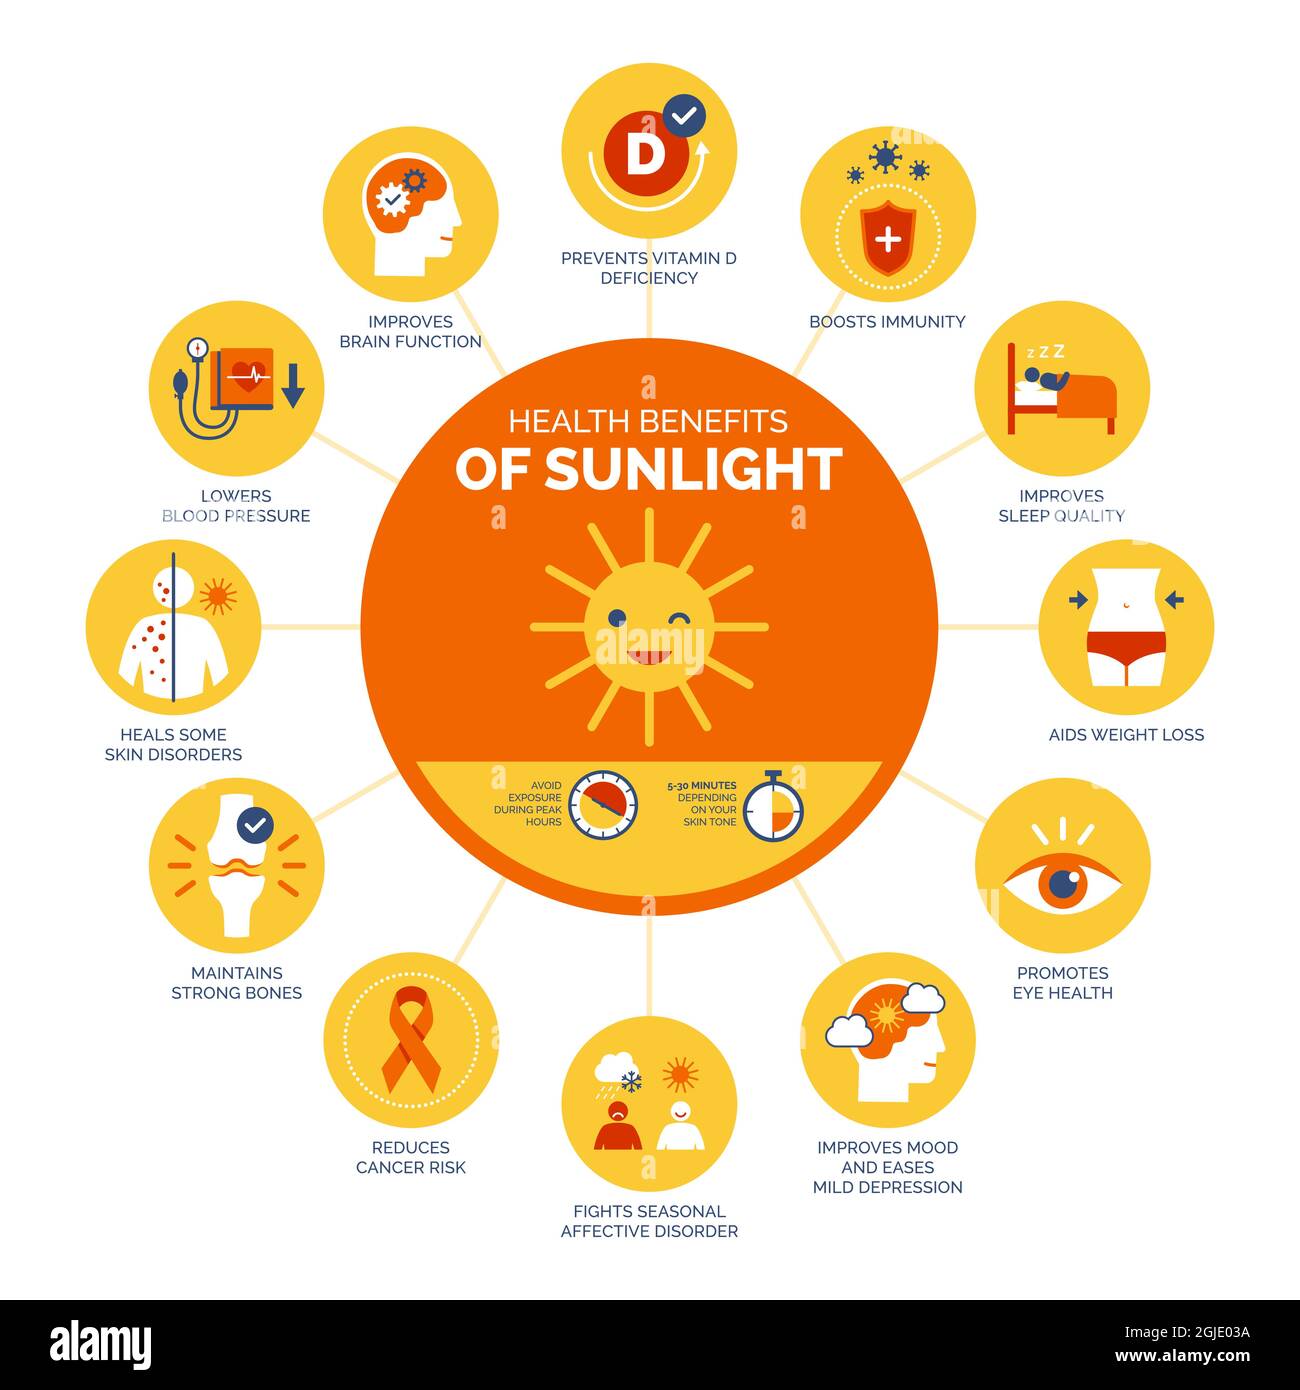 Les bienfaits de la lumière du soleil et de la vitamine D pour la santé, infographie sur les soins de santé et la prévention Illustration de Vecteur